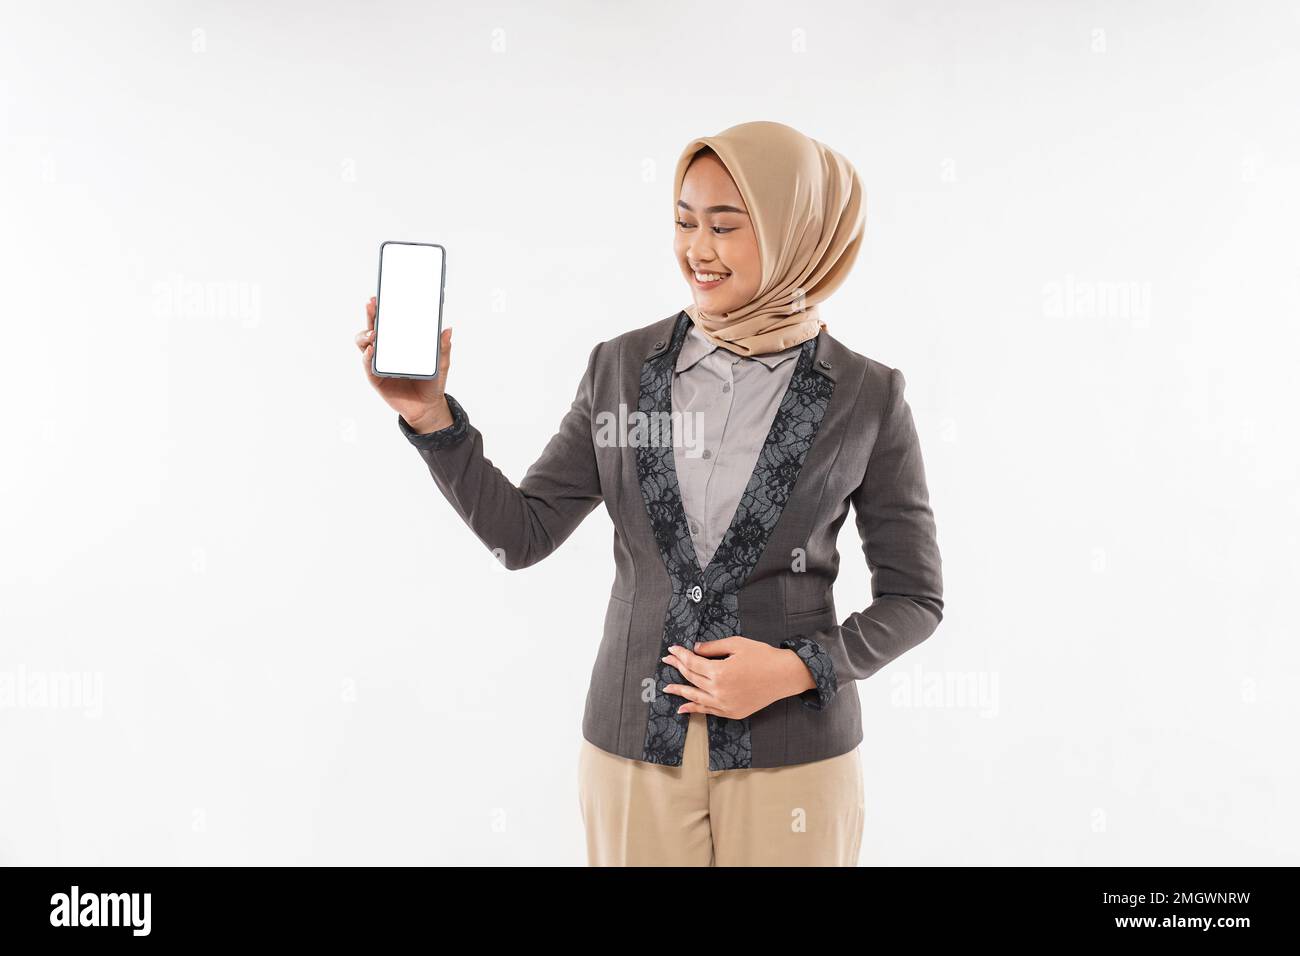 une femme avec hijab debout et montrant le téléphone à sa main Banque D'Images